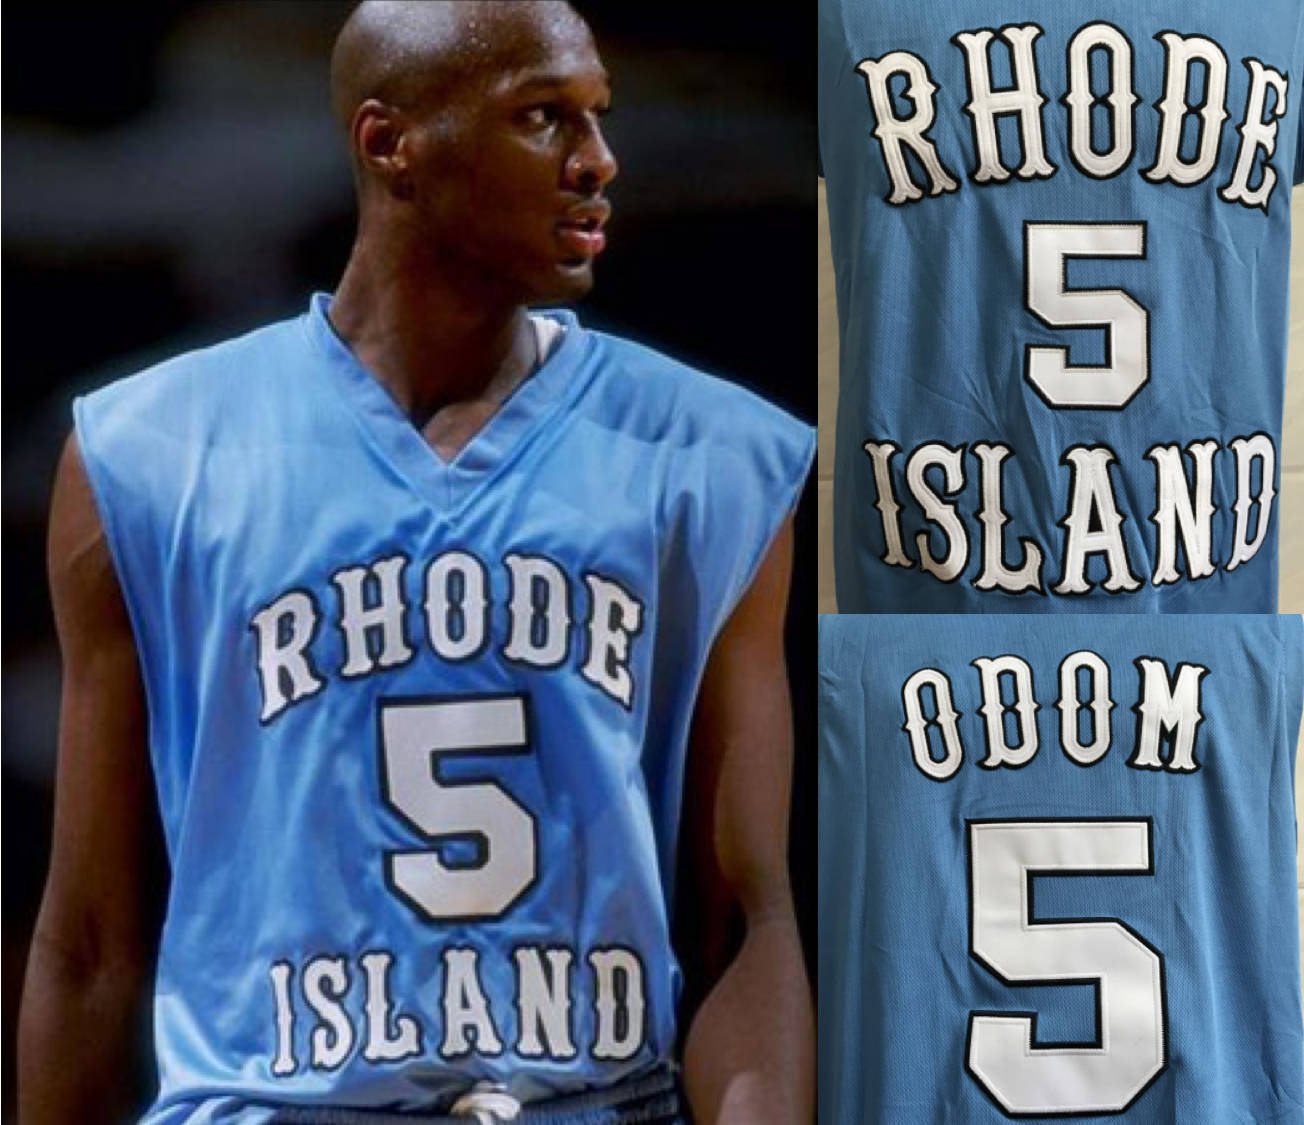 rhode island basketball jersey